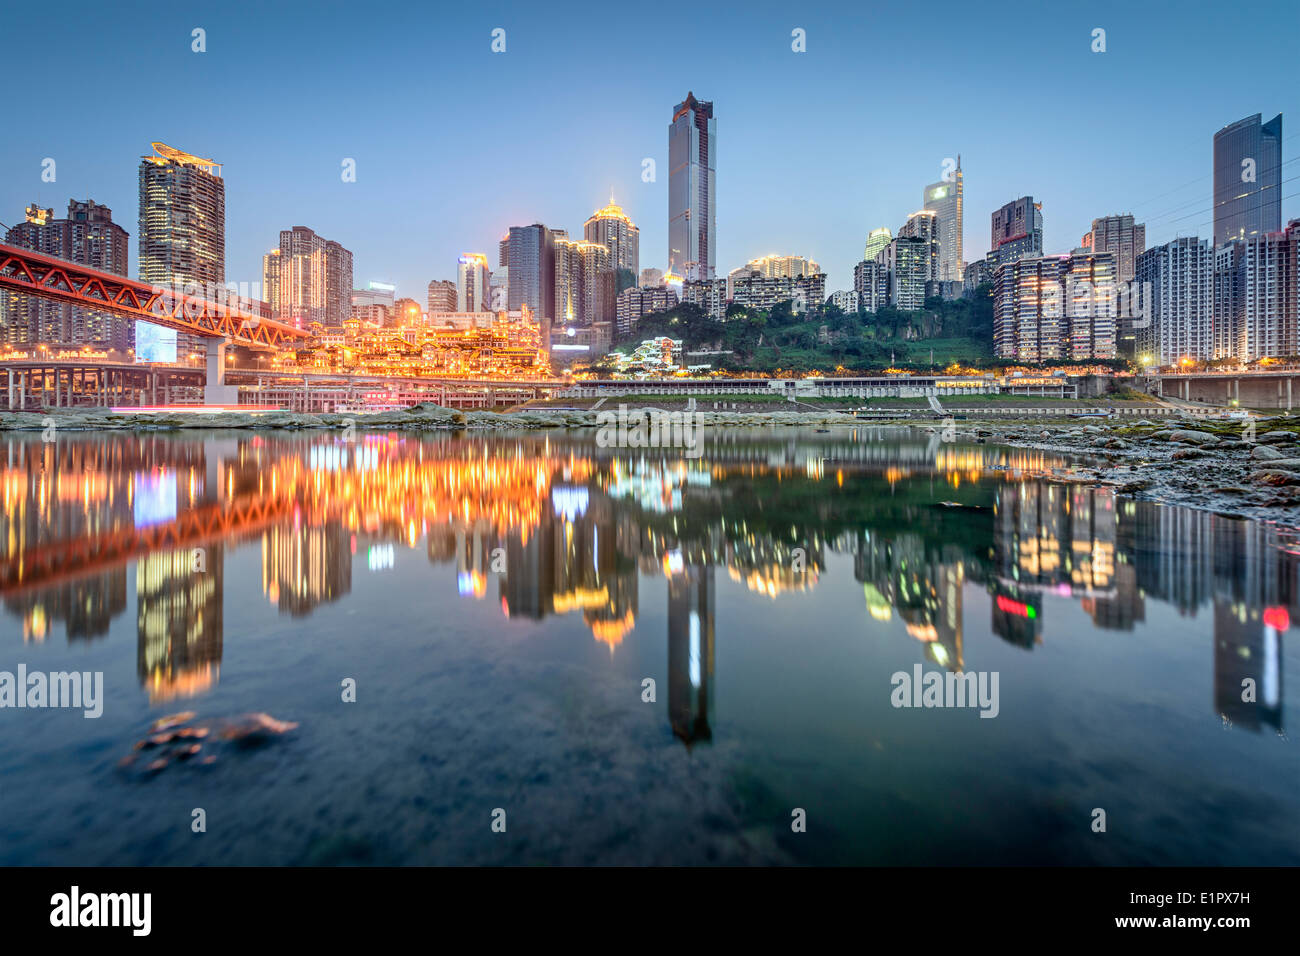 Chongqing, China across the Jialing River. Stock Photo